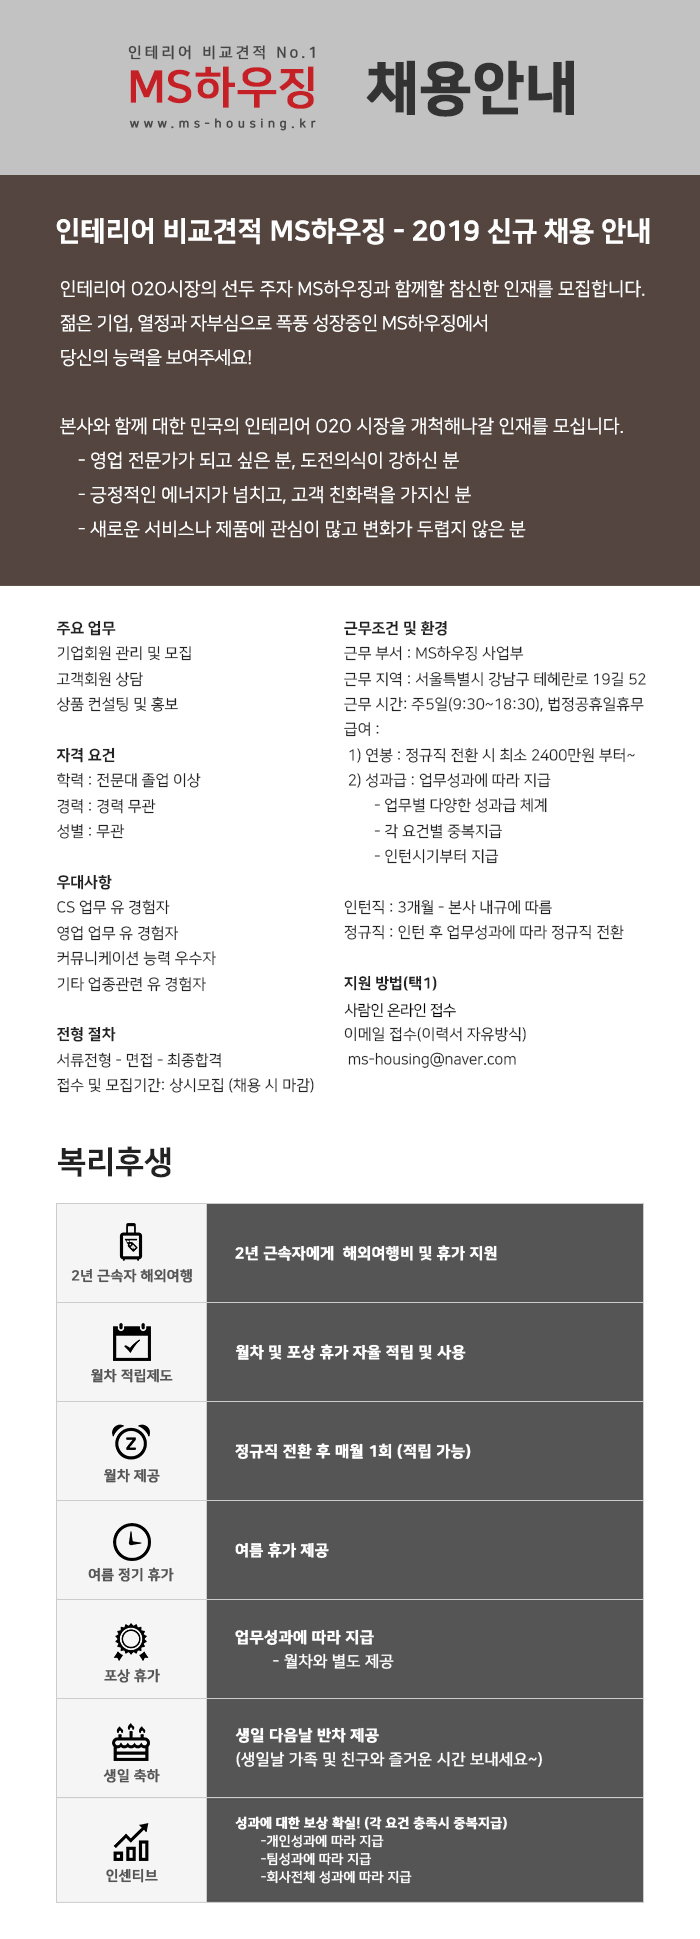 스타트업) MS하우징 -회원관리/영업관리/콜센터상담 정규직채용